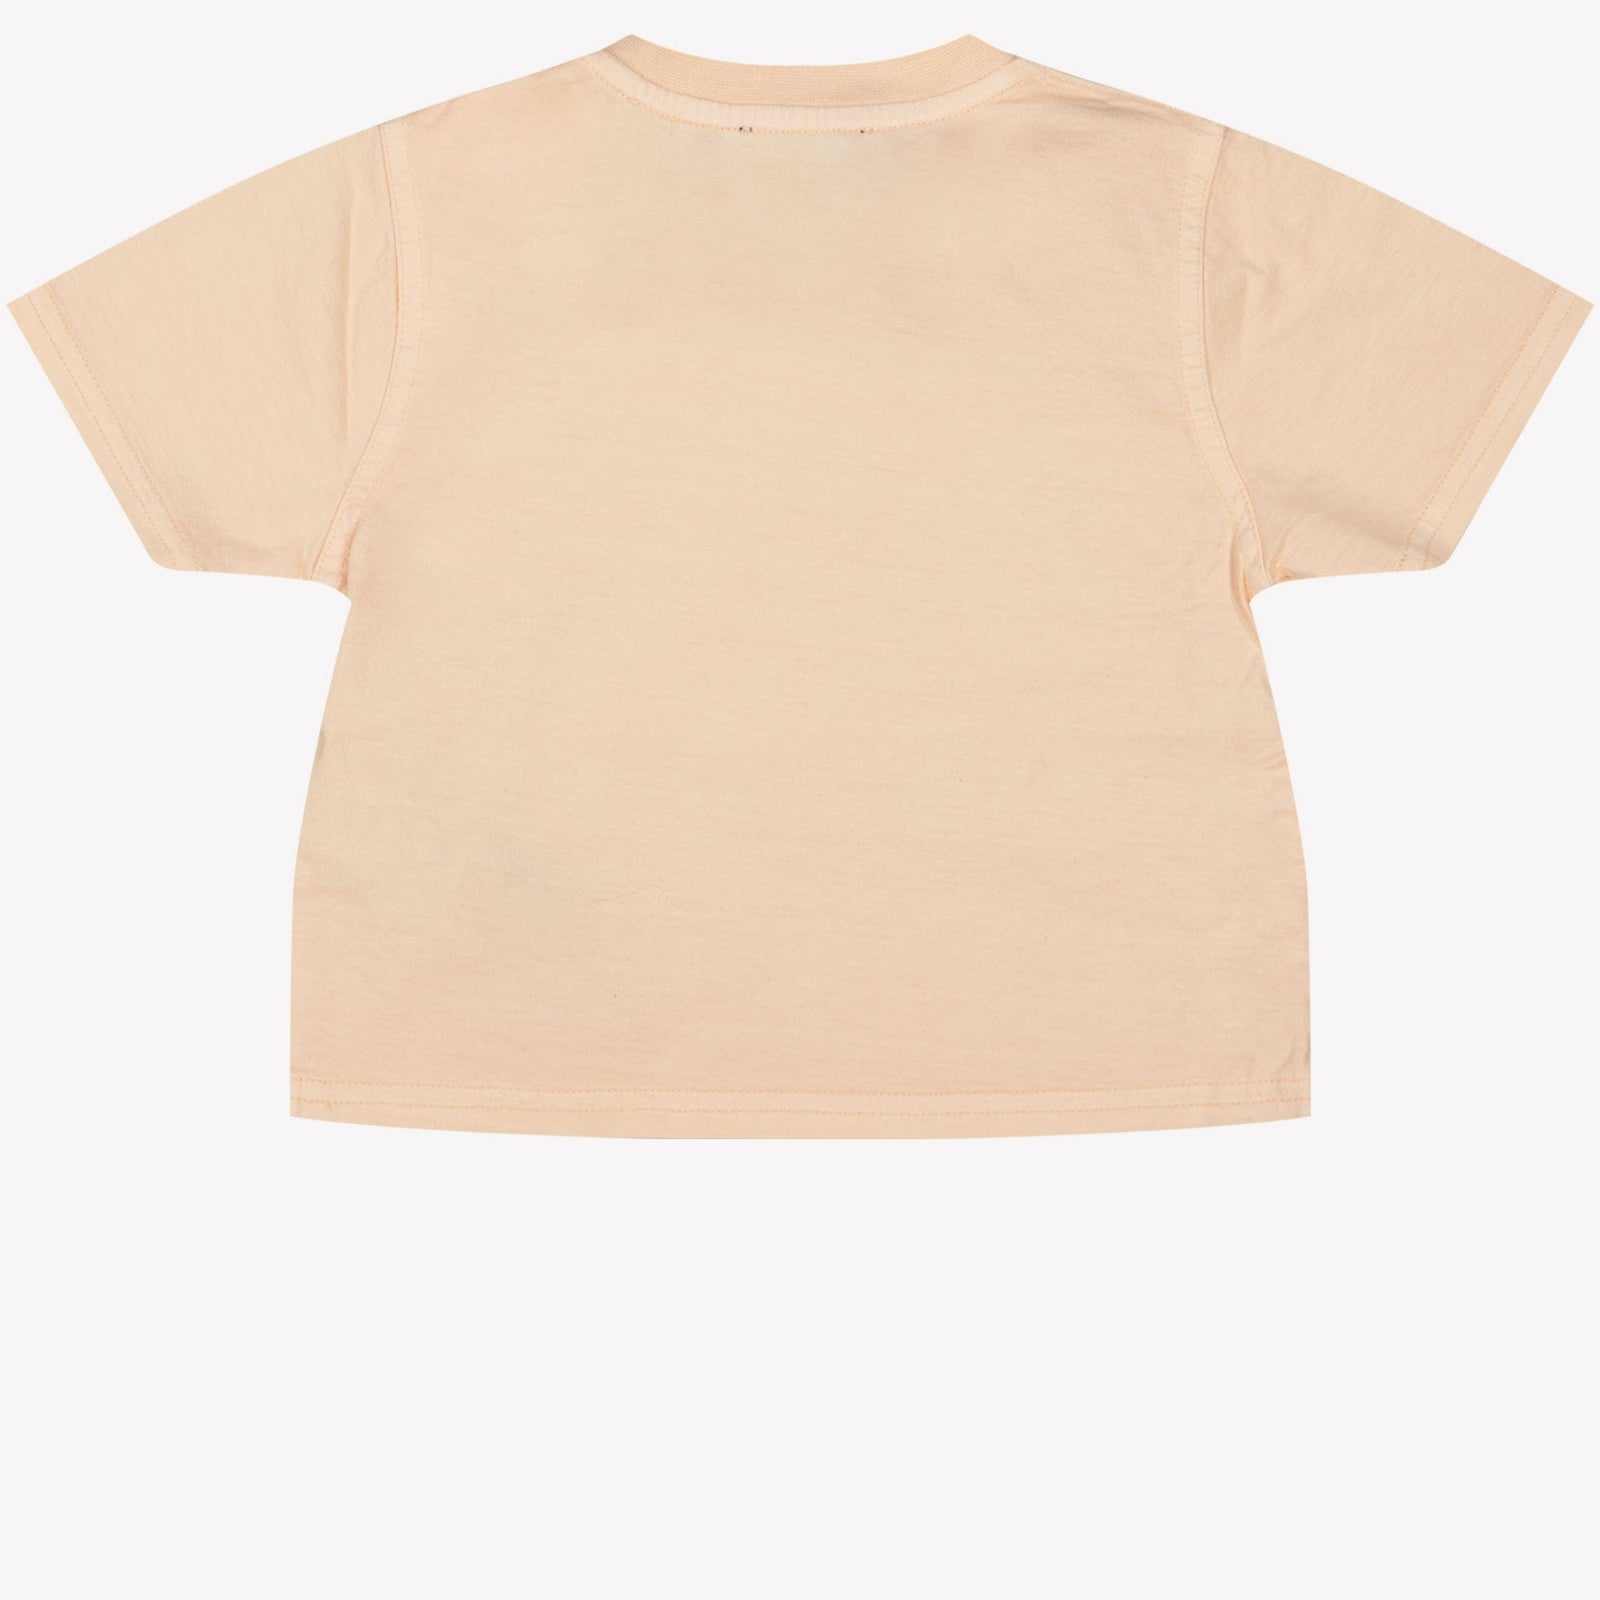 Burberry Baby Meisjes T Shirt Zalm 6 mnd